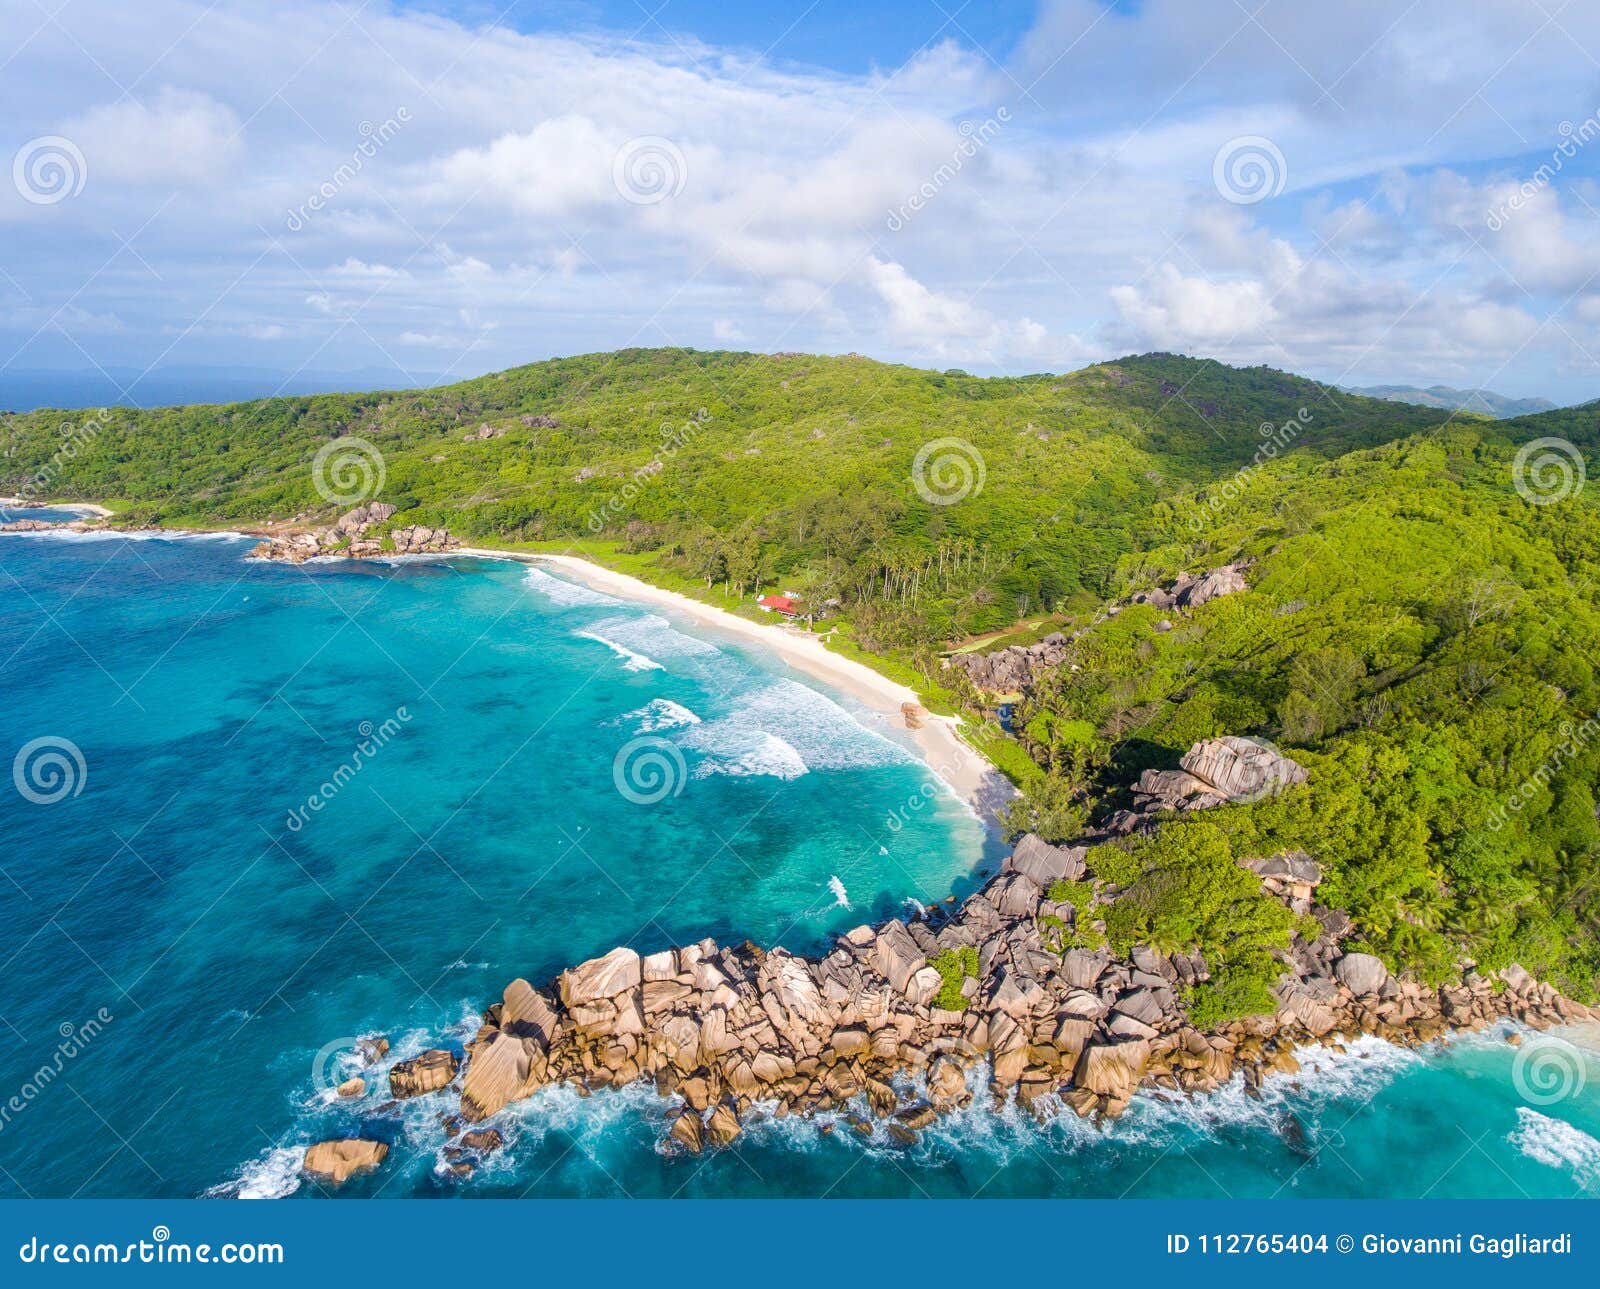 coastline of la digue island, seychelles aerial view